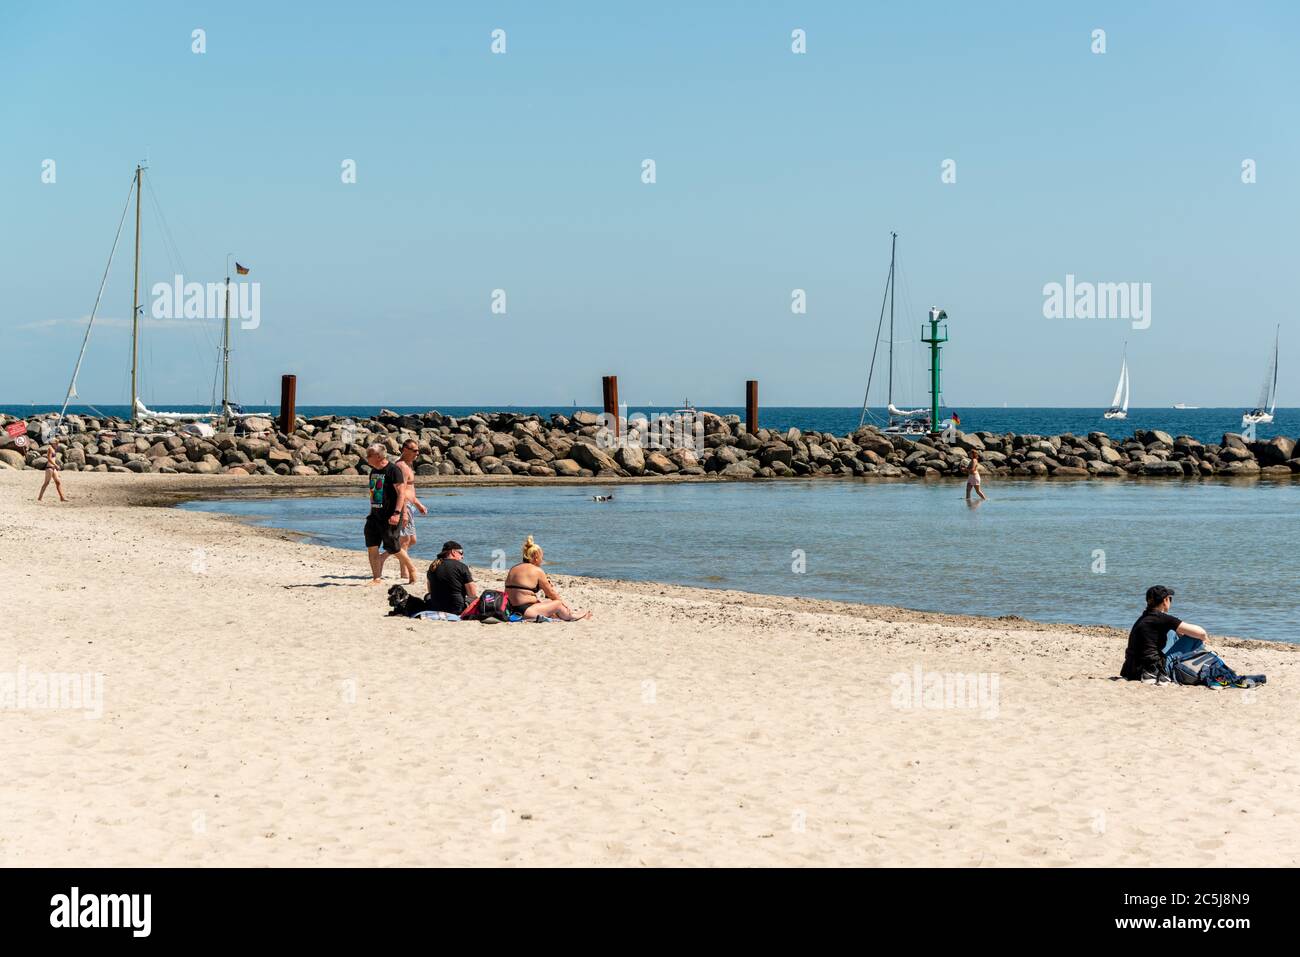 Strandleben mit Strandkörben im Ostseebad Damp an der Schleswig-Holsteinischen Küste Stock Photo